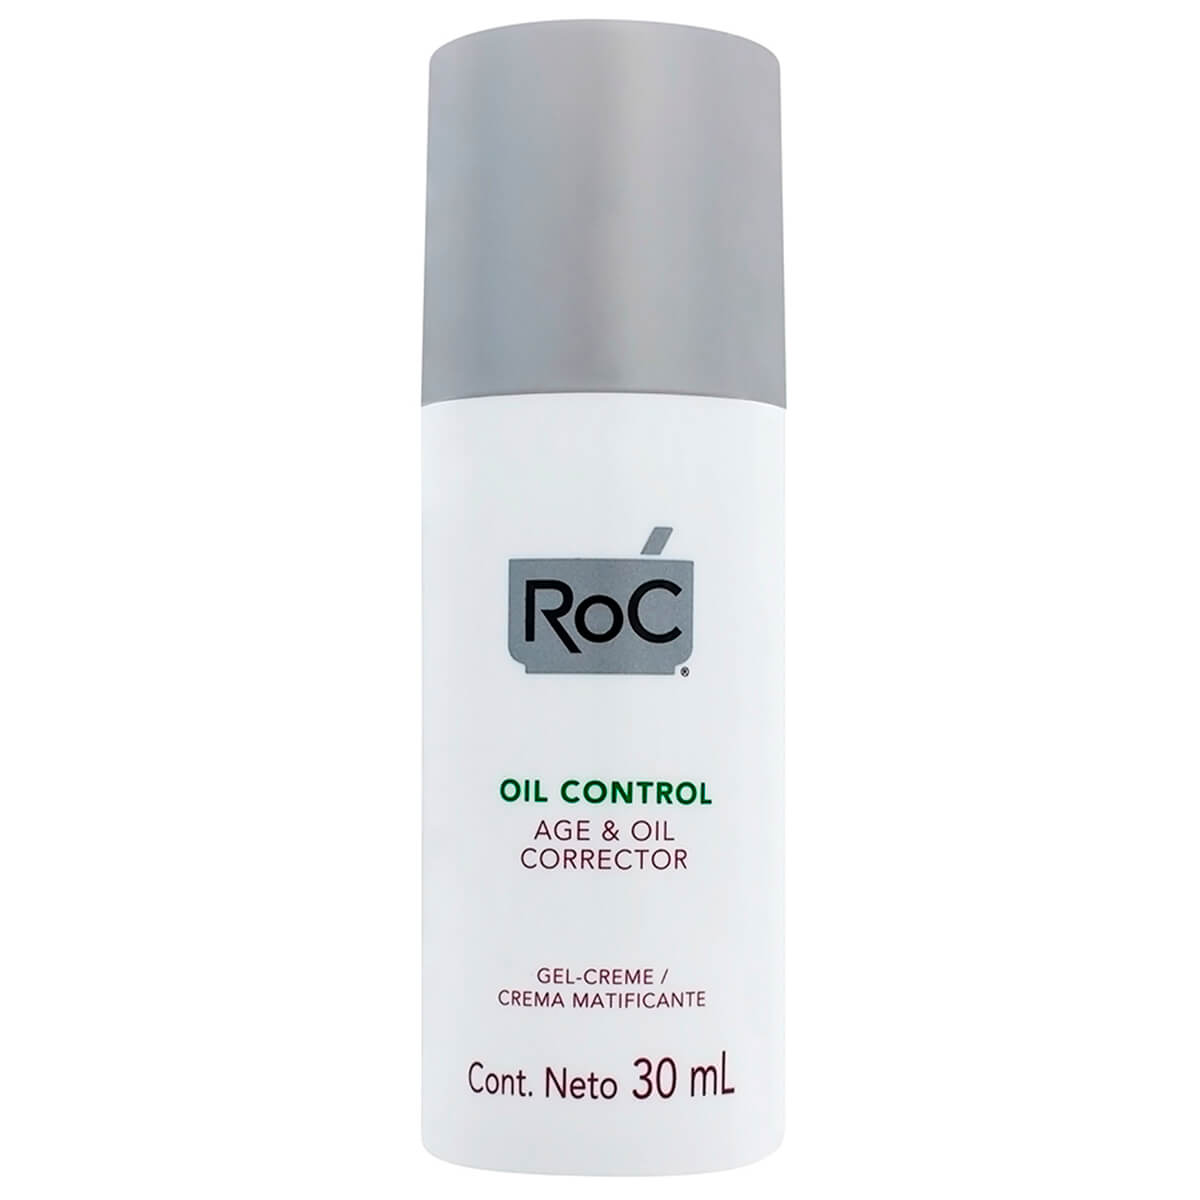 Roc Oil Control Age & Oil Corrector 30ml